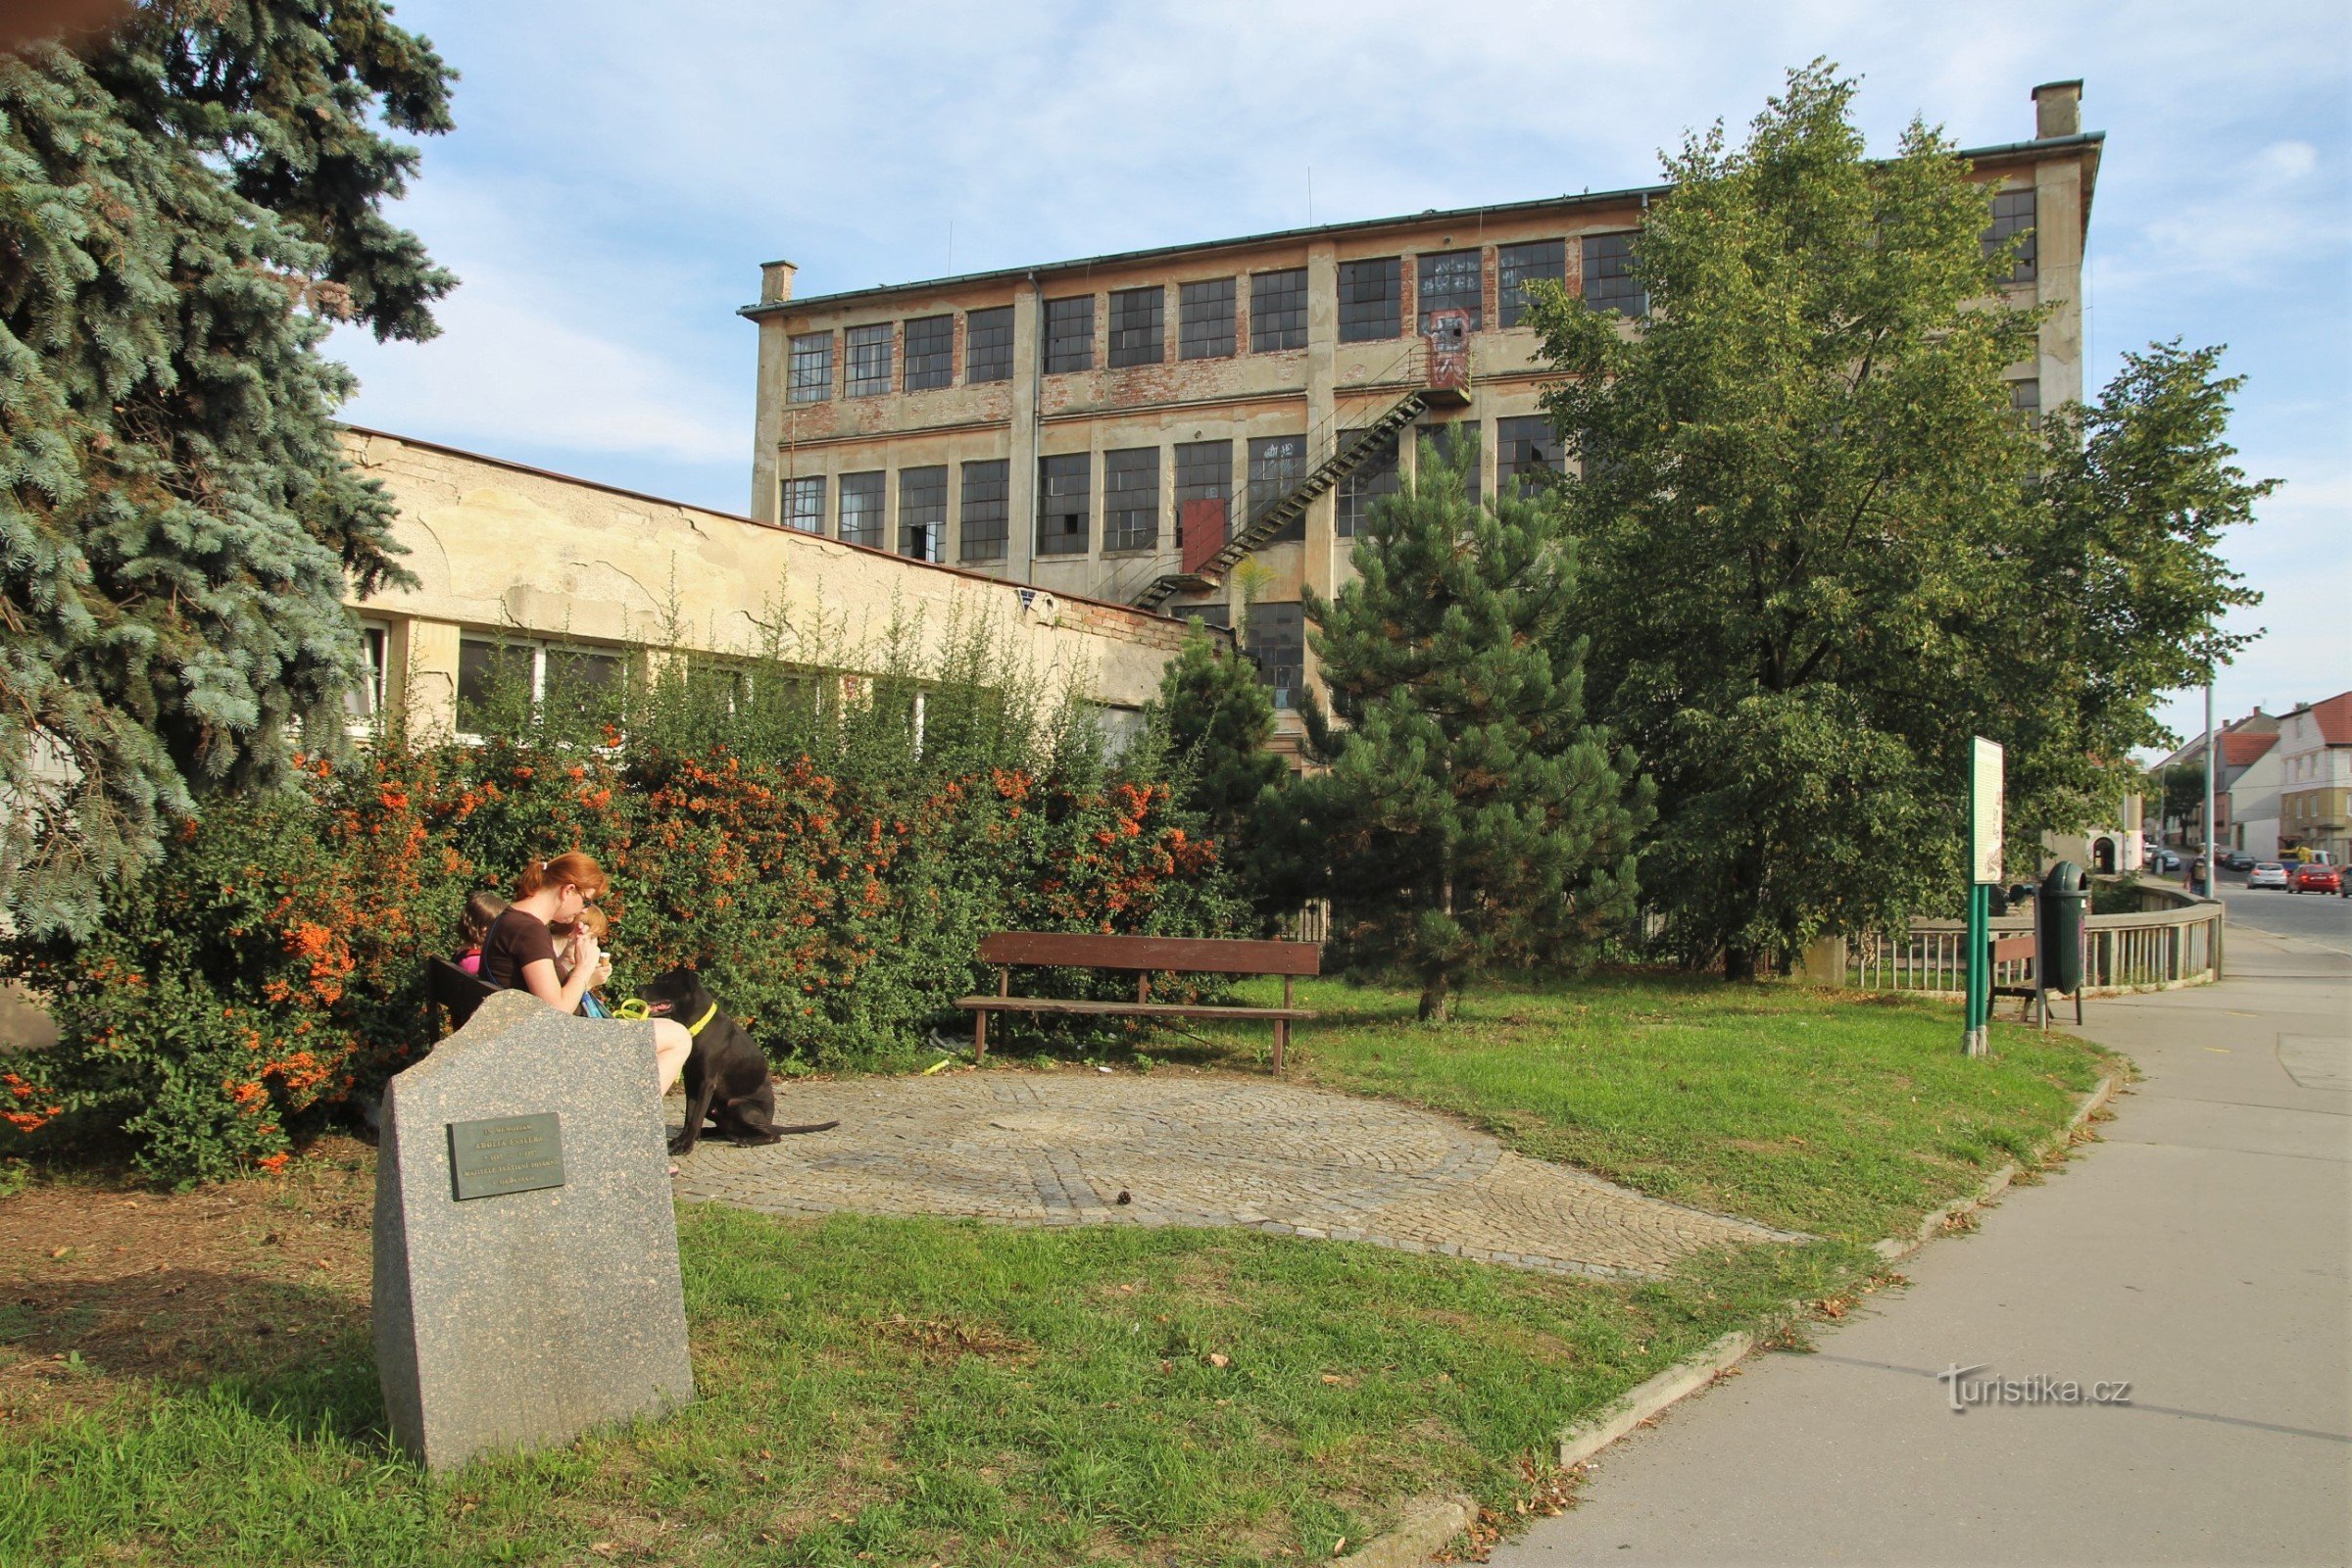 Spomenik Adolfu Essleru, u pozadini zgrada tvornice Essler